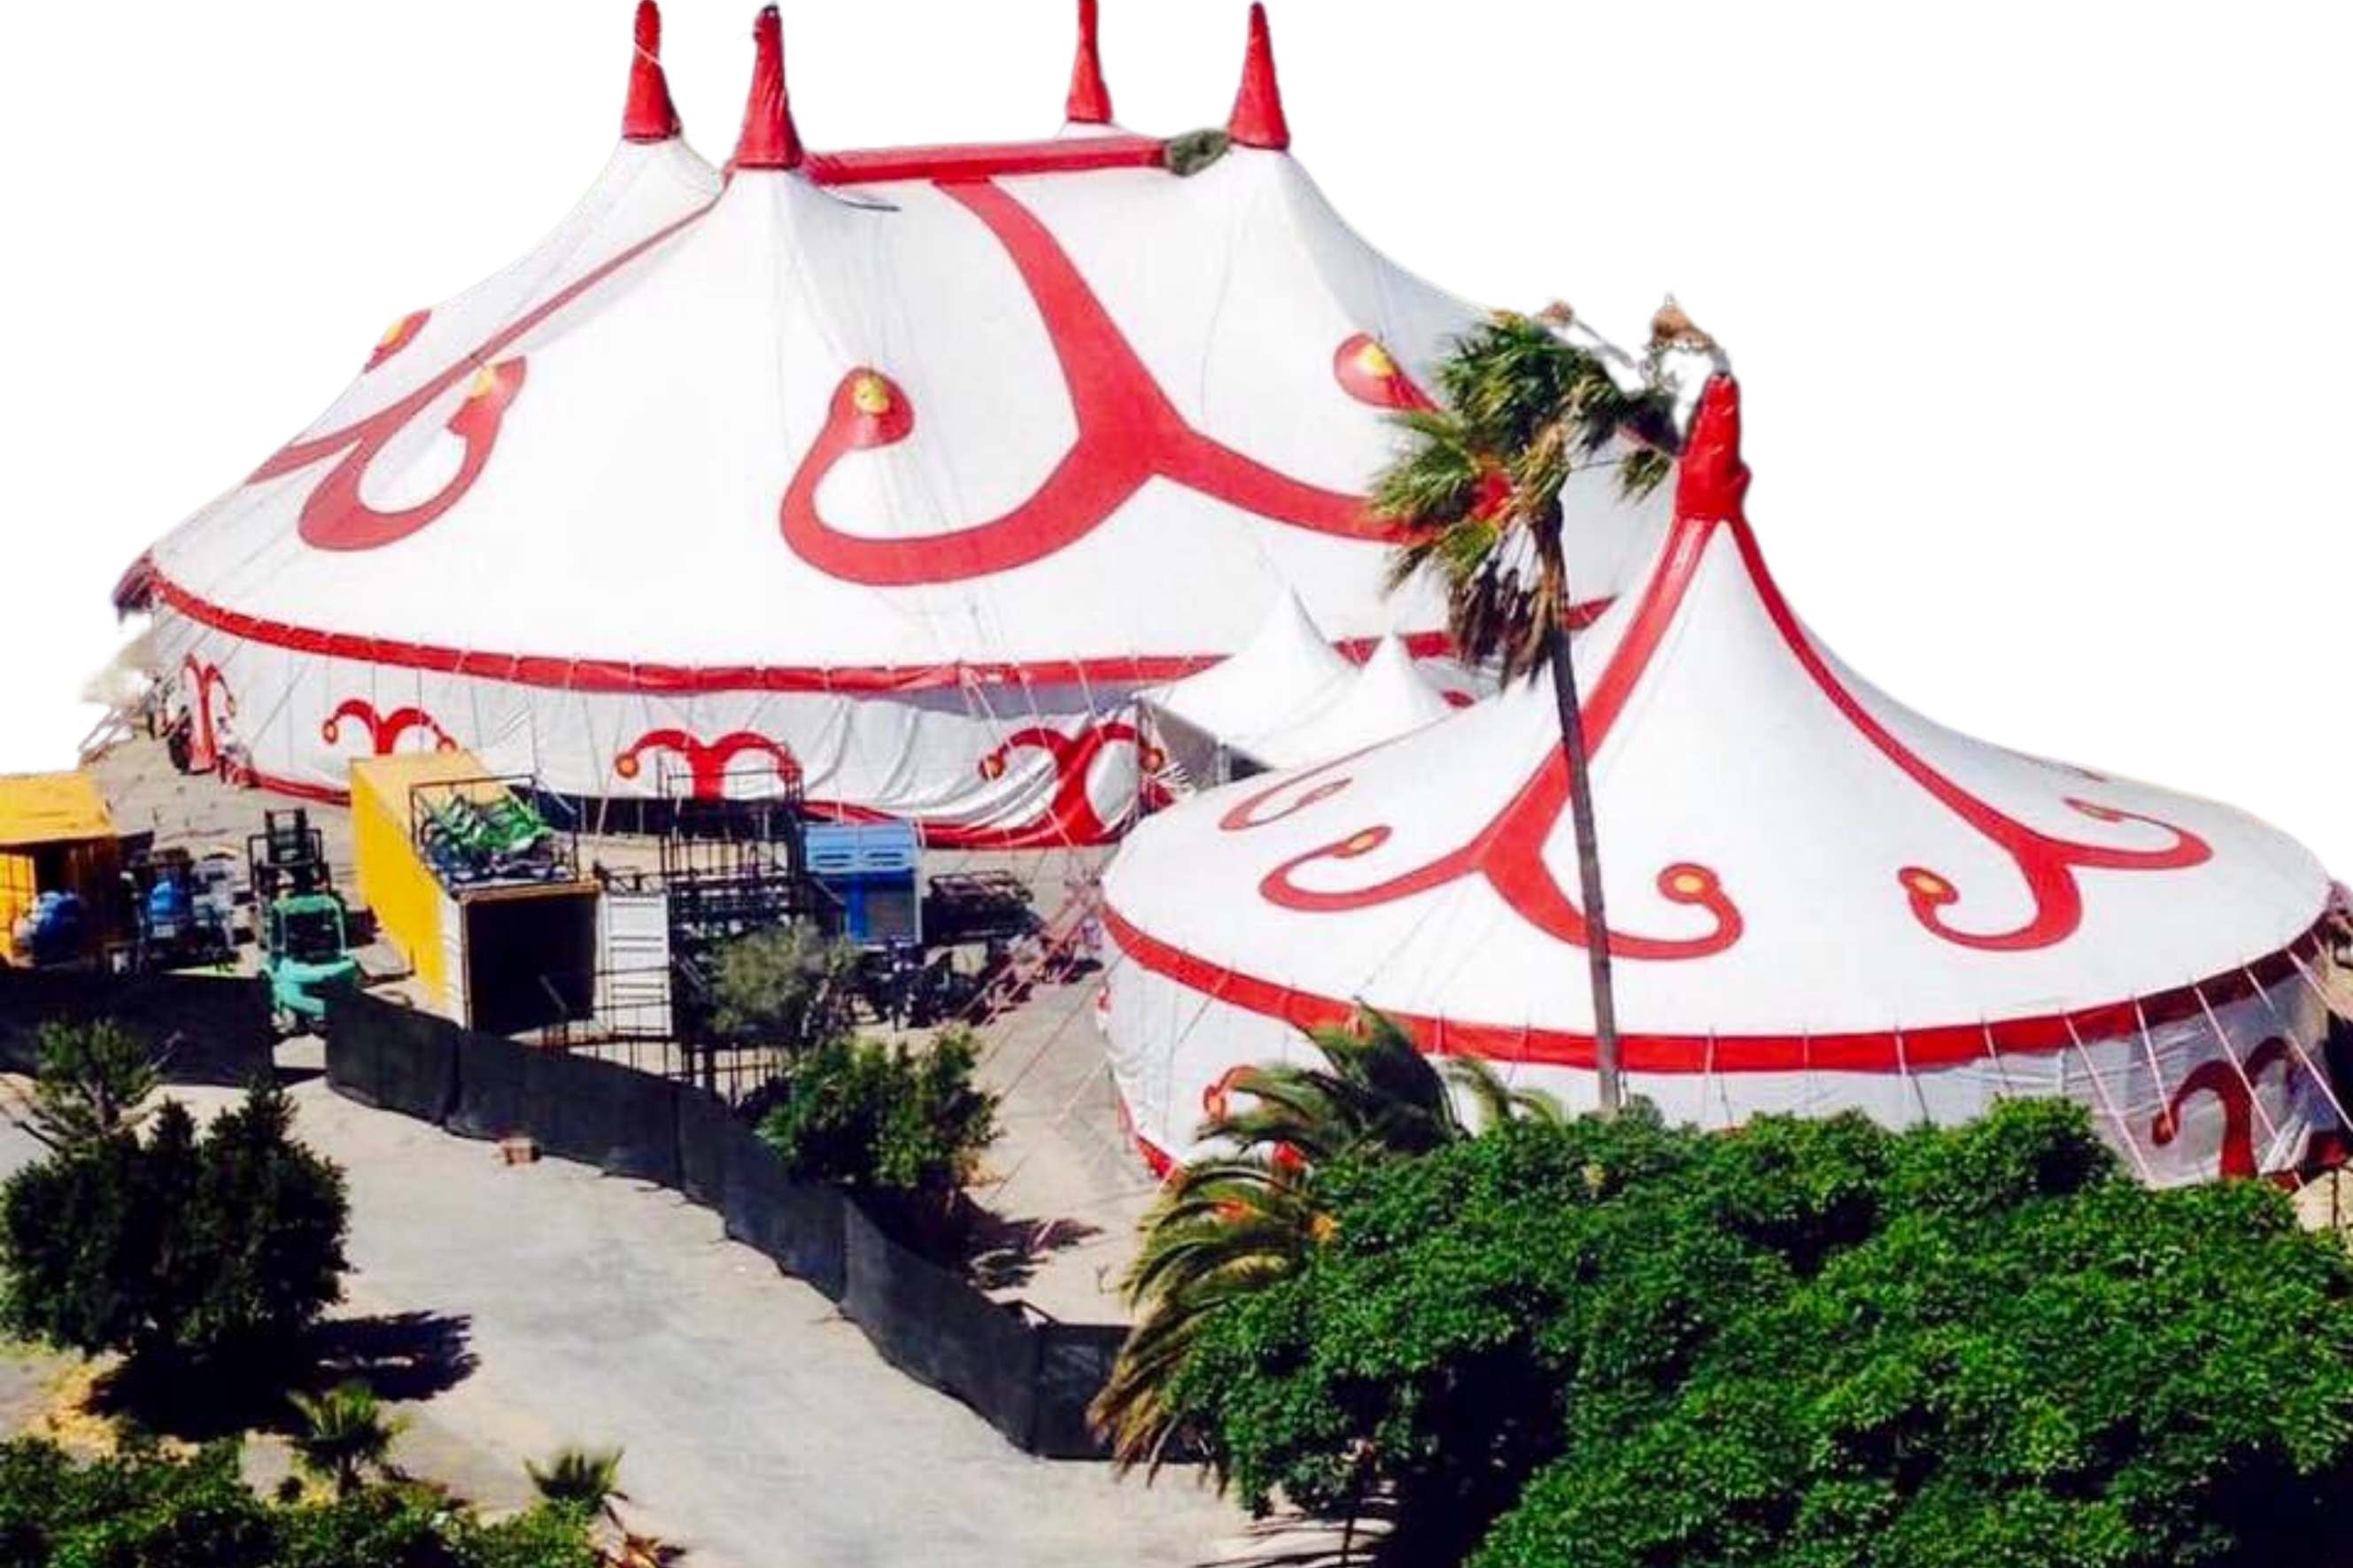 Circo Em Campinas | Conheça o Circus Mirage